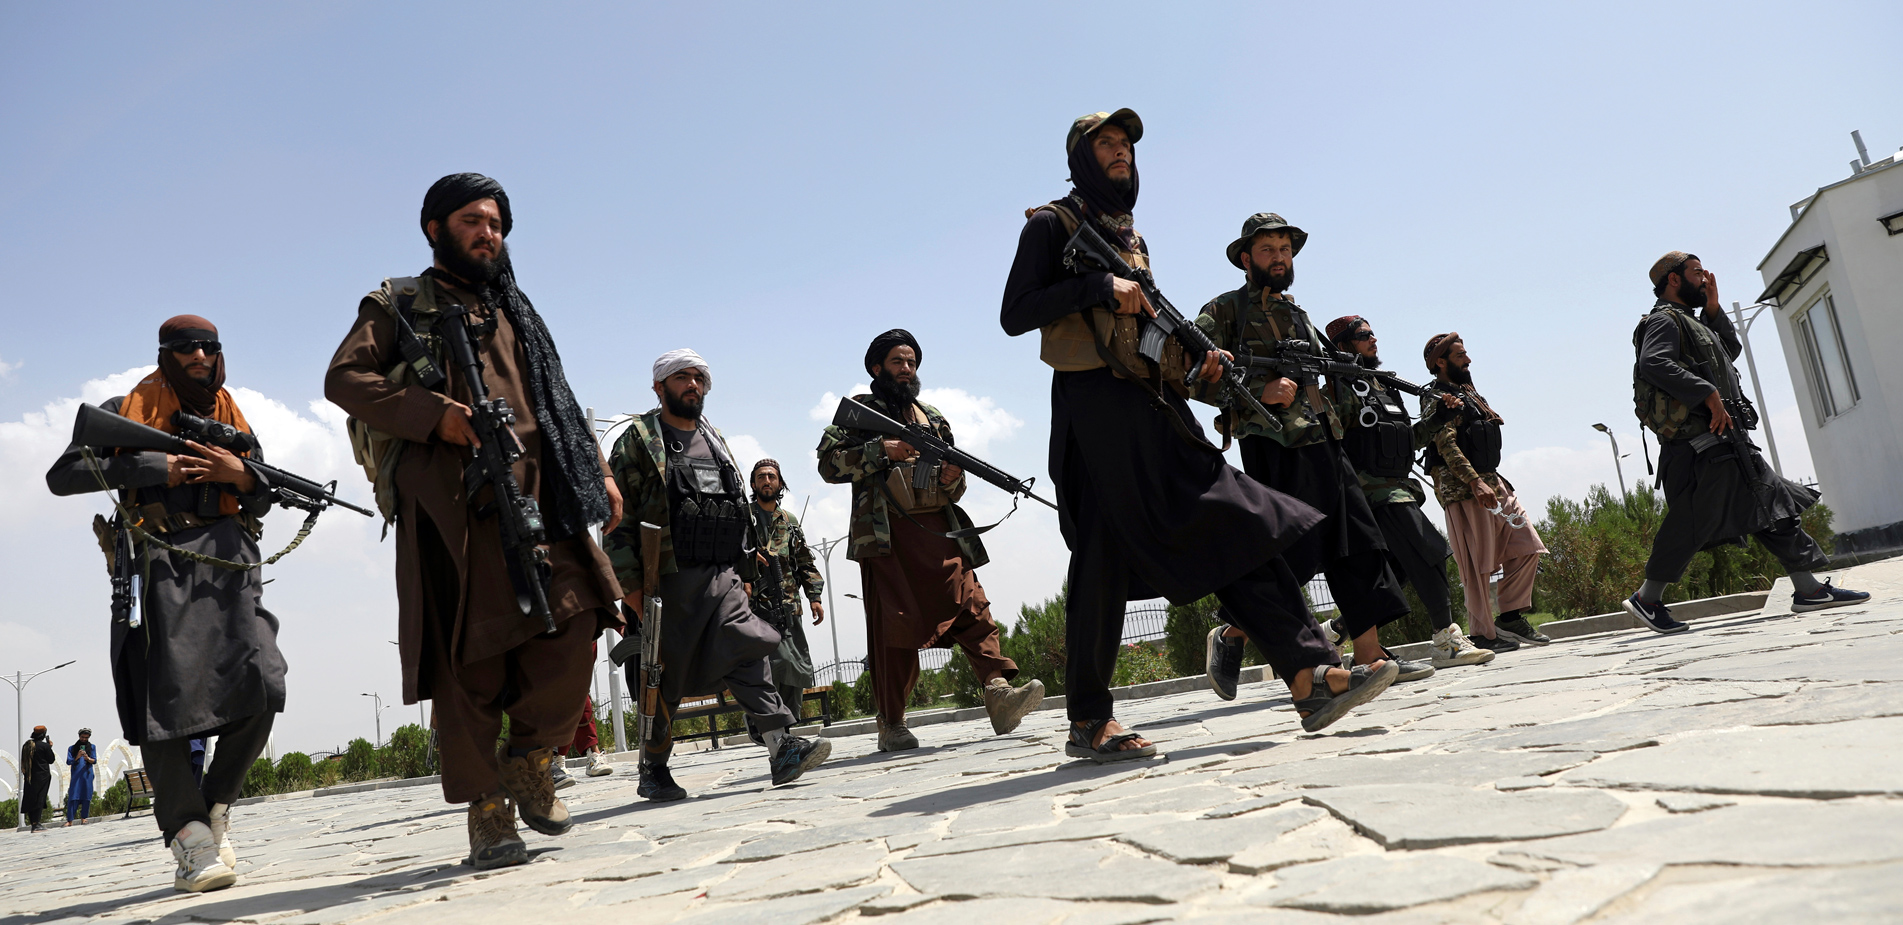 Οι Ταλιμπάν στην εξουσία: Ποια η επόμενη μέρα για την τρομοκρατία